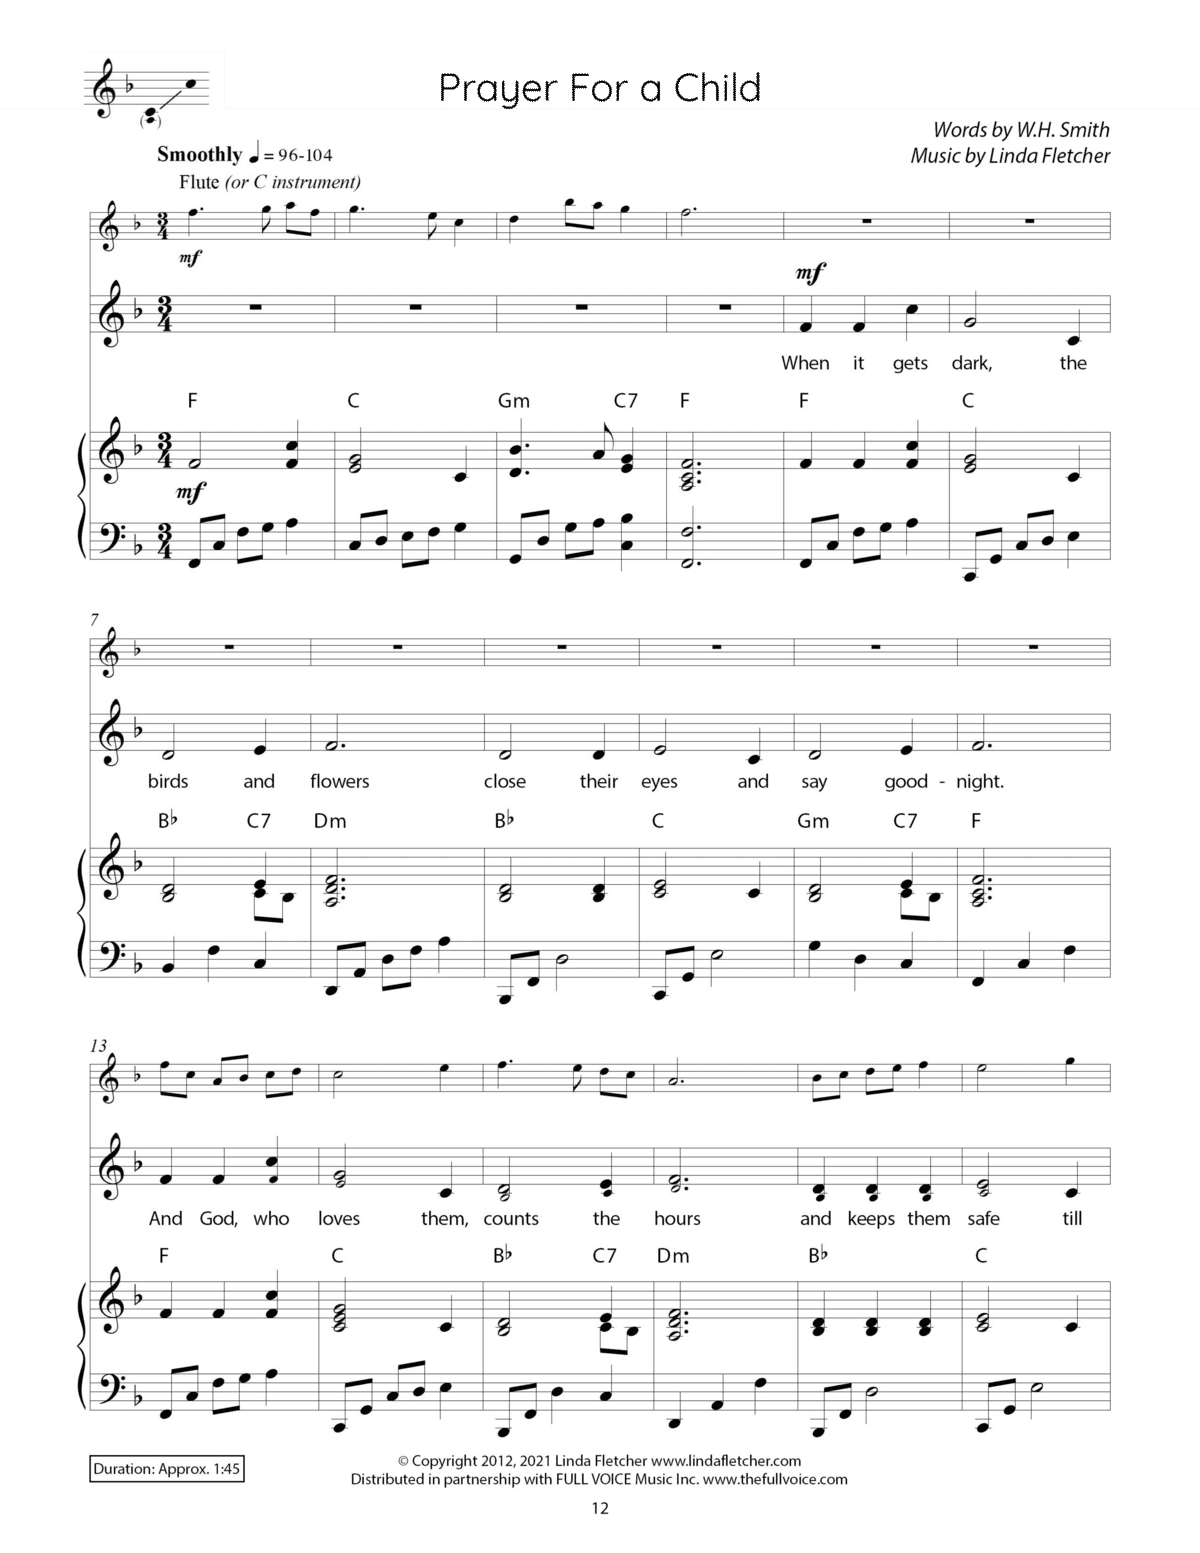 Children’s Songs of Praise (PDF)